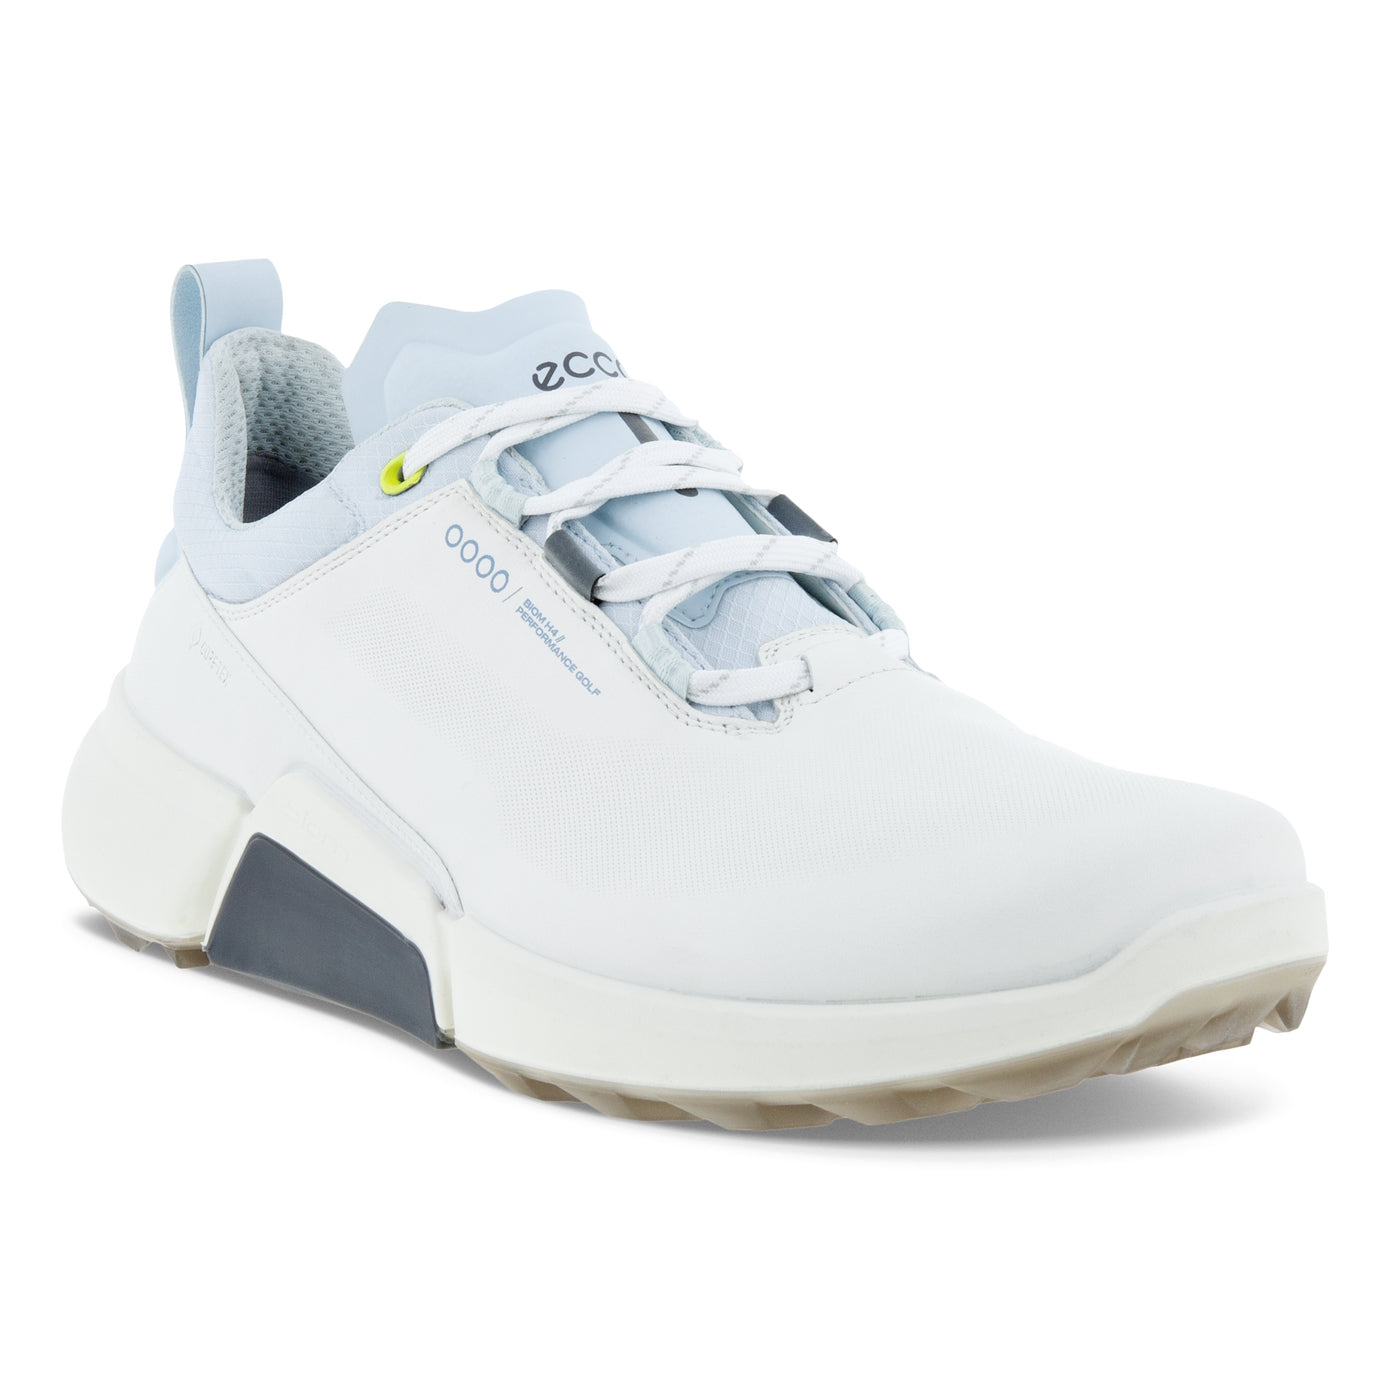 Ecco Men's Biom H4 Golf Shoes - White/Air